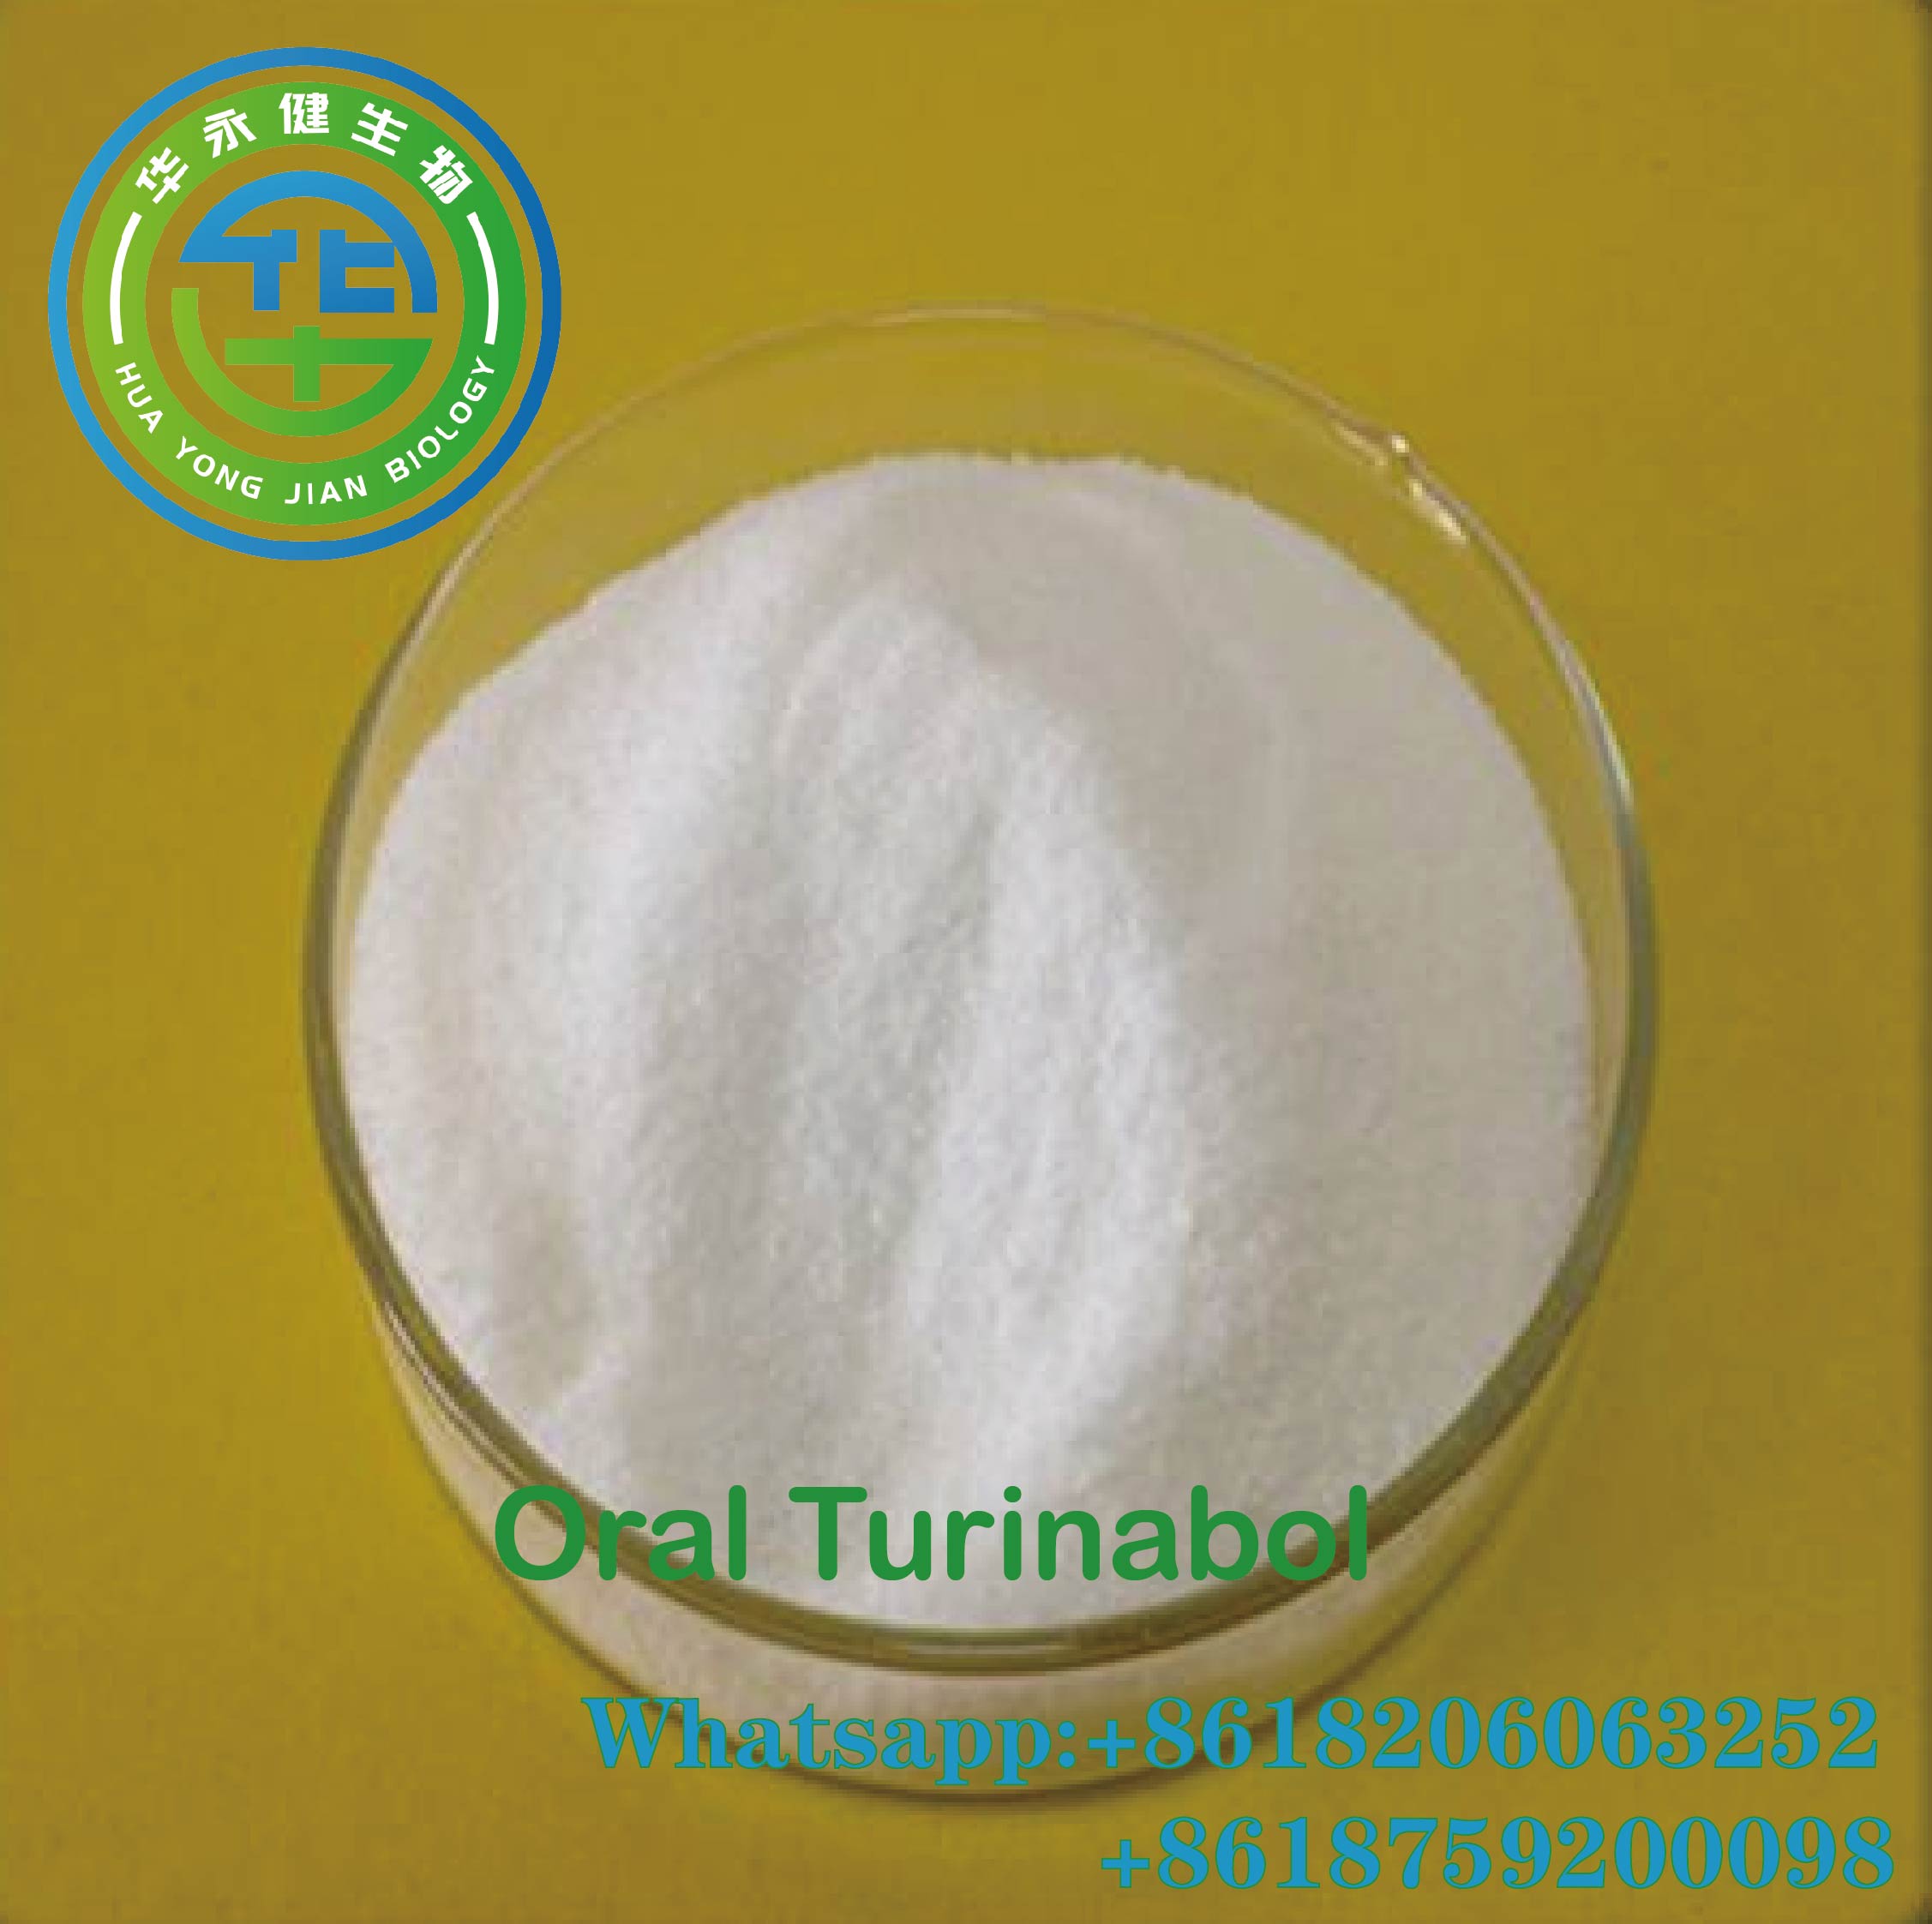 Bulk Order Raw Steroids Oral Turinabol nga adunay Domestic Shipping Cas 2446-23-3 Raw Powder Barato nga Presyo nga Featured Image